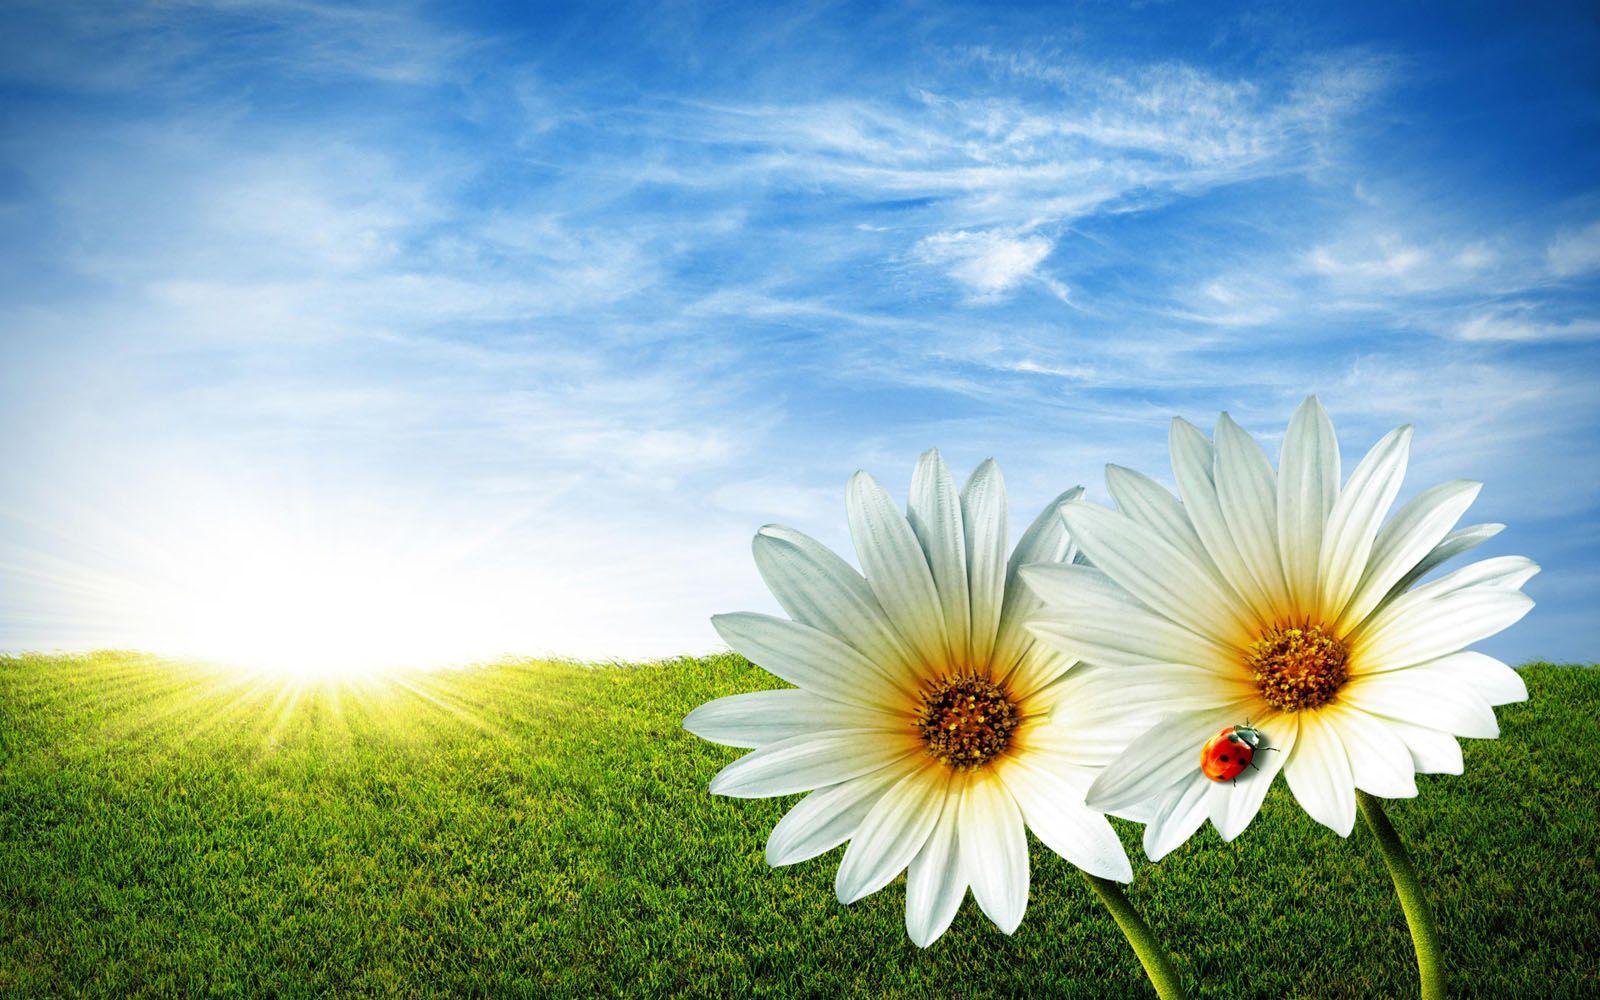 Hãy làm mới màn hình desktop của bạn với hình nền hoa tuyệt đẹp cho Windows 7 - và miễn phí! Thưởng thức những hình ảnh hoa đặc sắc như hoa hồng, hoa anh đào hay hoa hướng dương. Bạn sẽ cảm thấy thư giãn và thăng hoa với màu sắc tươi tắn của các loại hoa trên nền desktop.